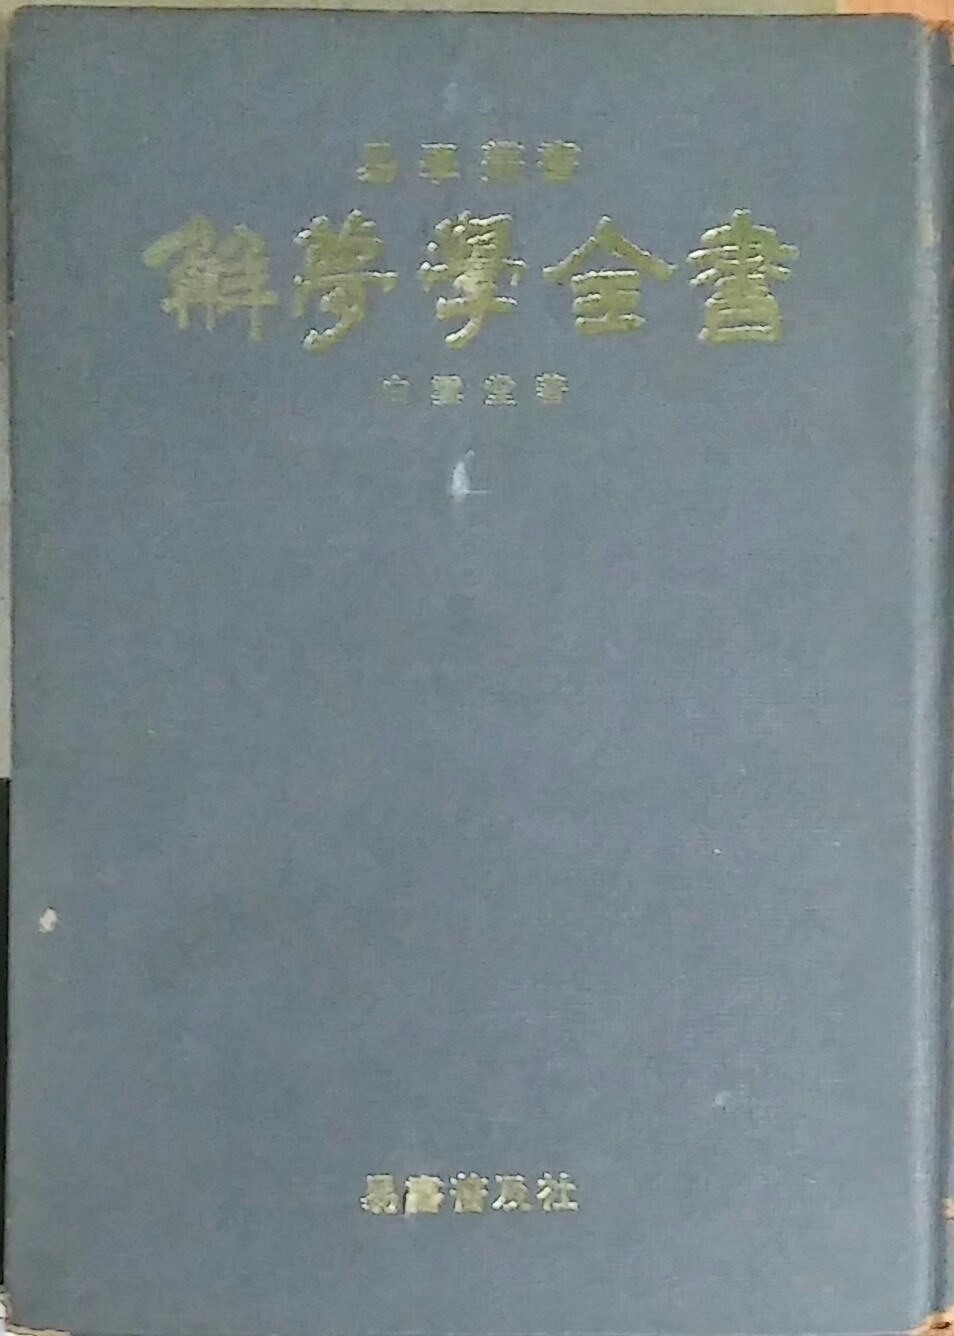 해몽학전서 解夢學全書 ,역서보급사 1979년 초판